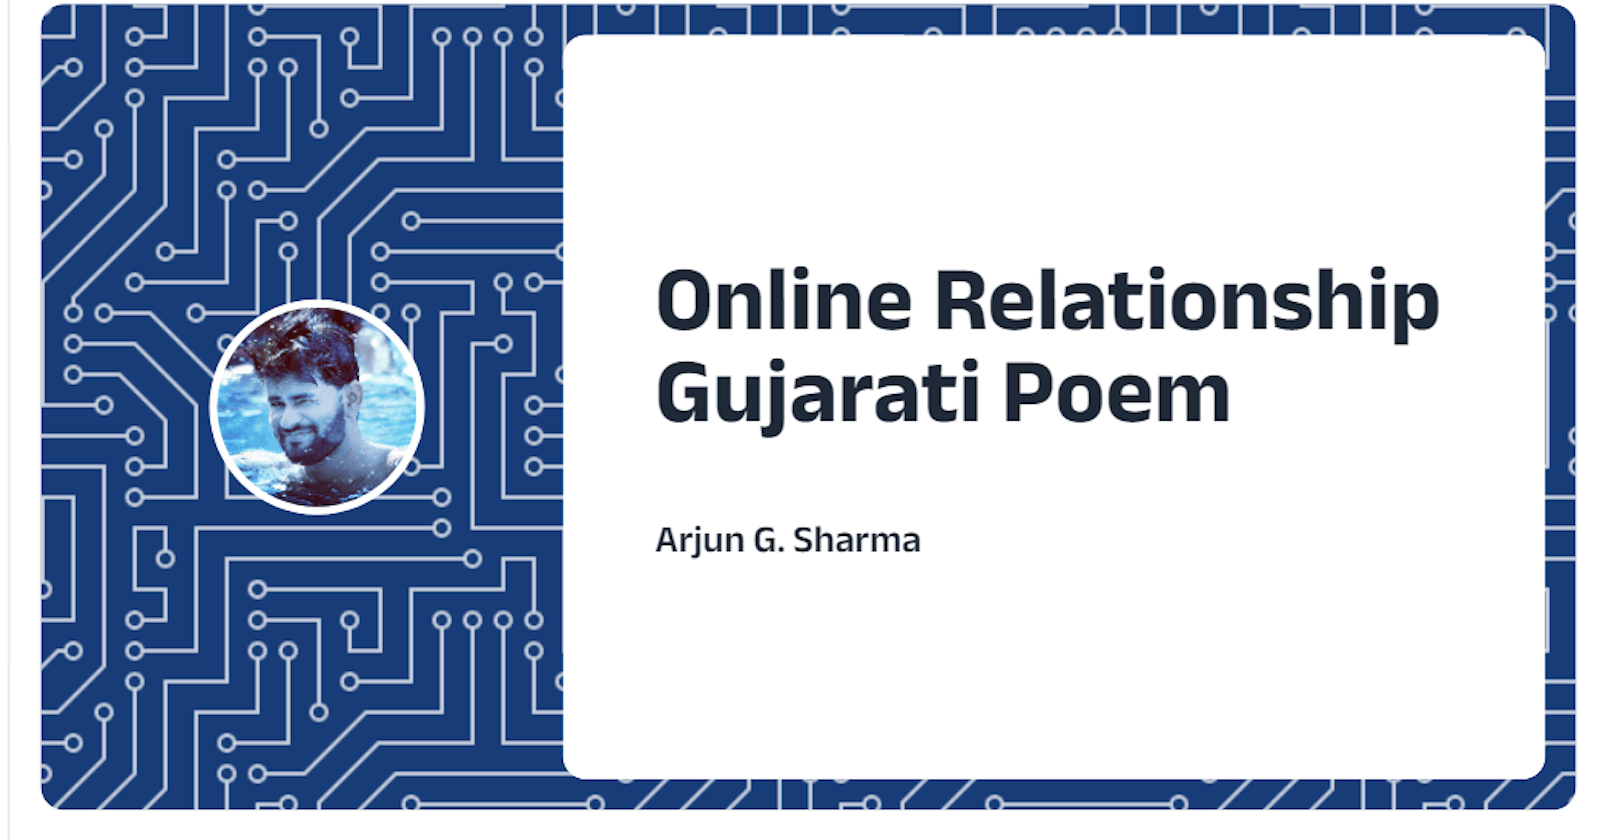 Online Relationship - Gujarati Poem